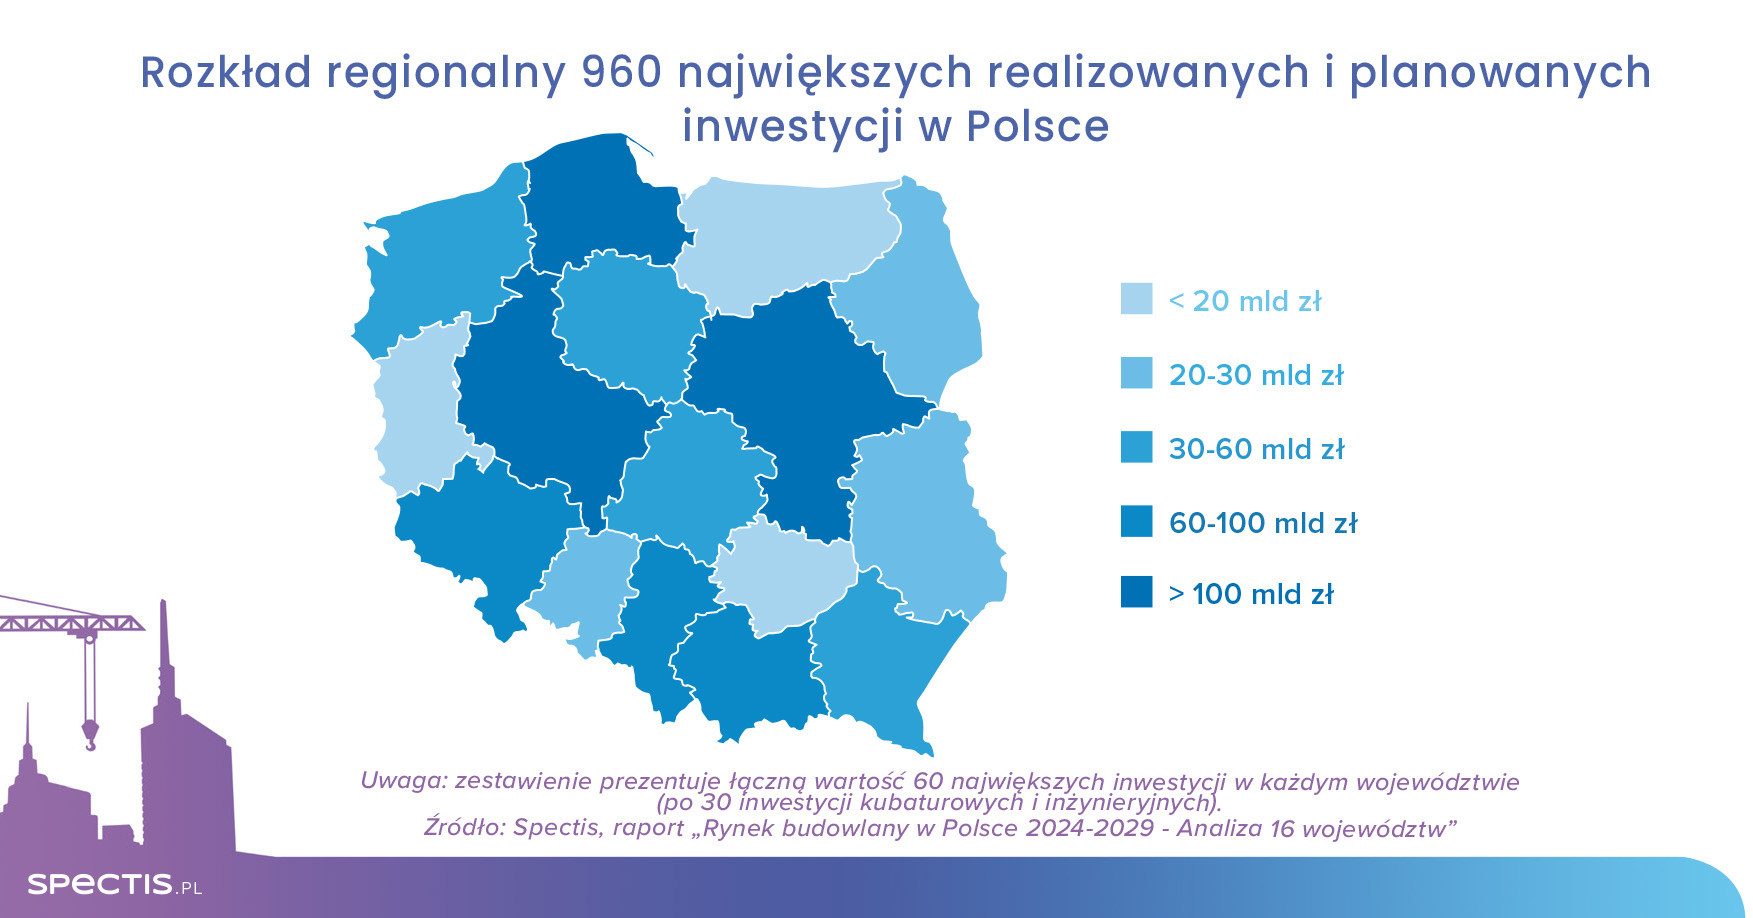 1000 największych inwestycji budowlanych w Polsce wartych niemal 900 mld zł